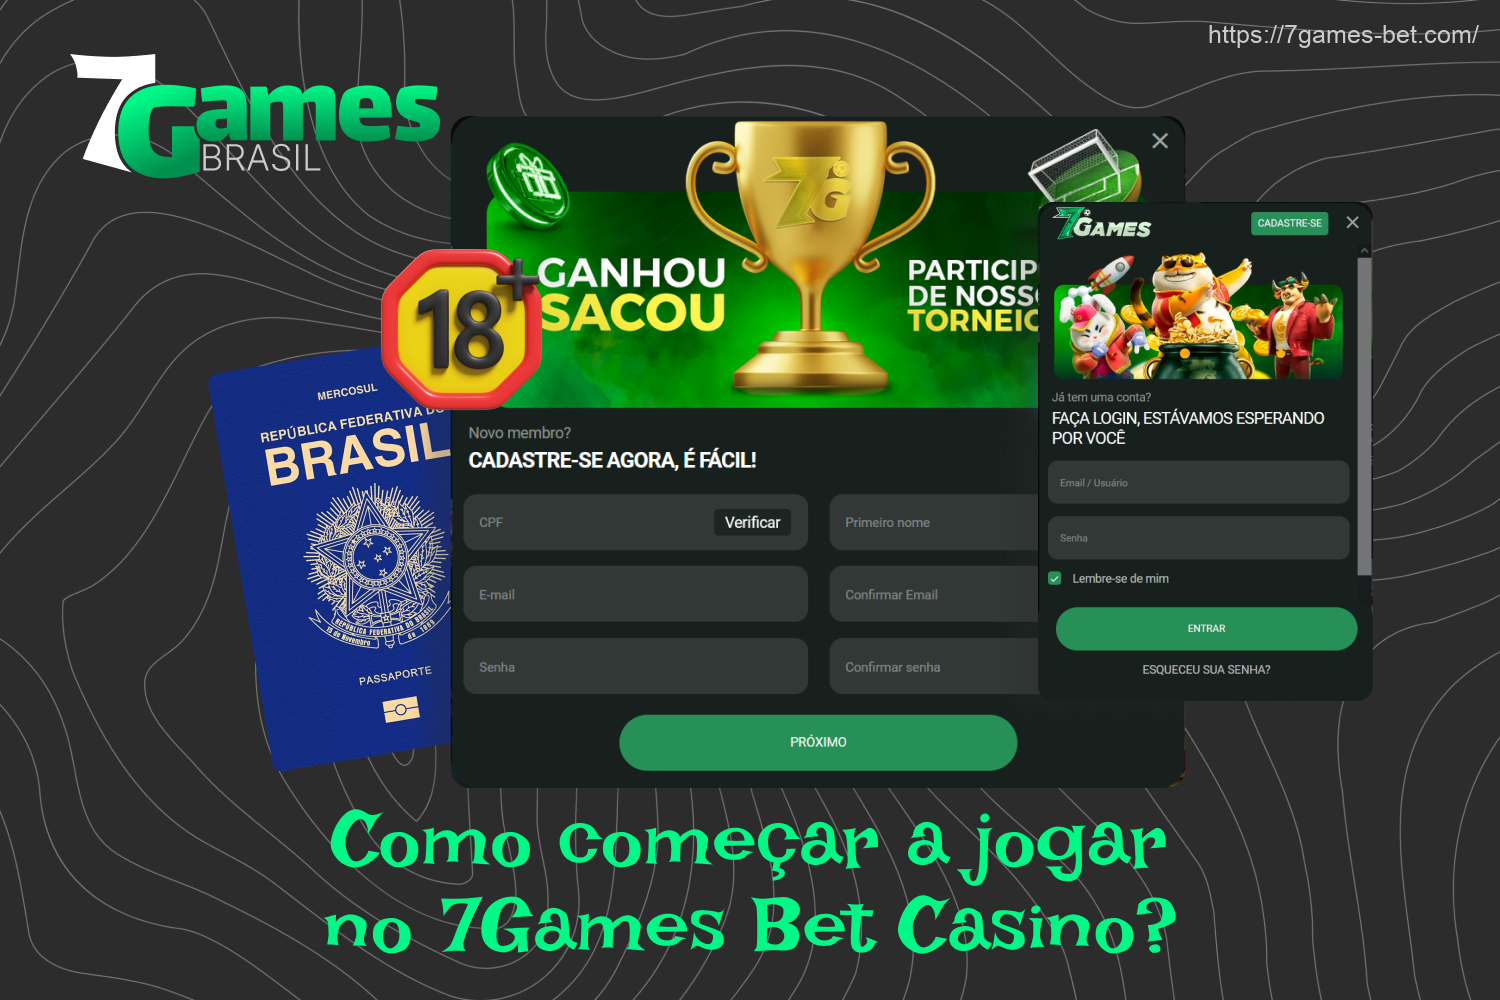 Para começar a jogar com dinheiro real no cassino 7Games, um usuário do Brasil precisa criar uma conta, fazer o login e fazer um depósito